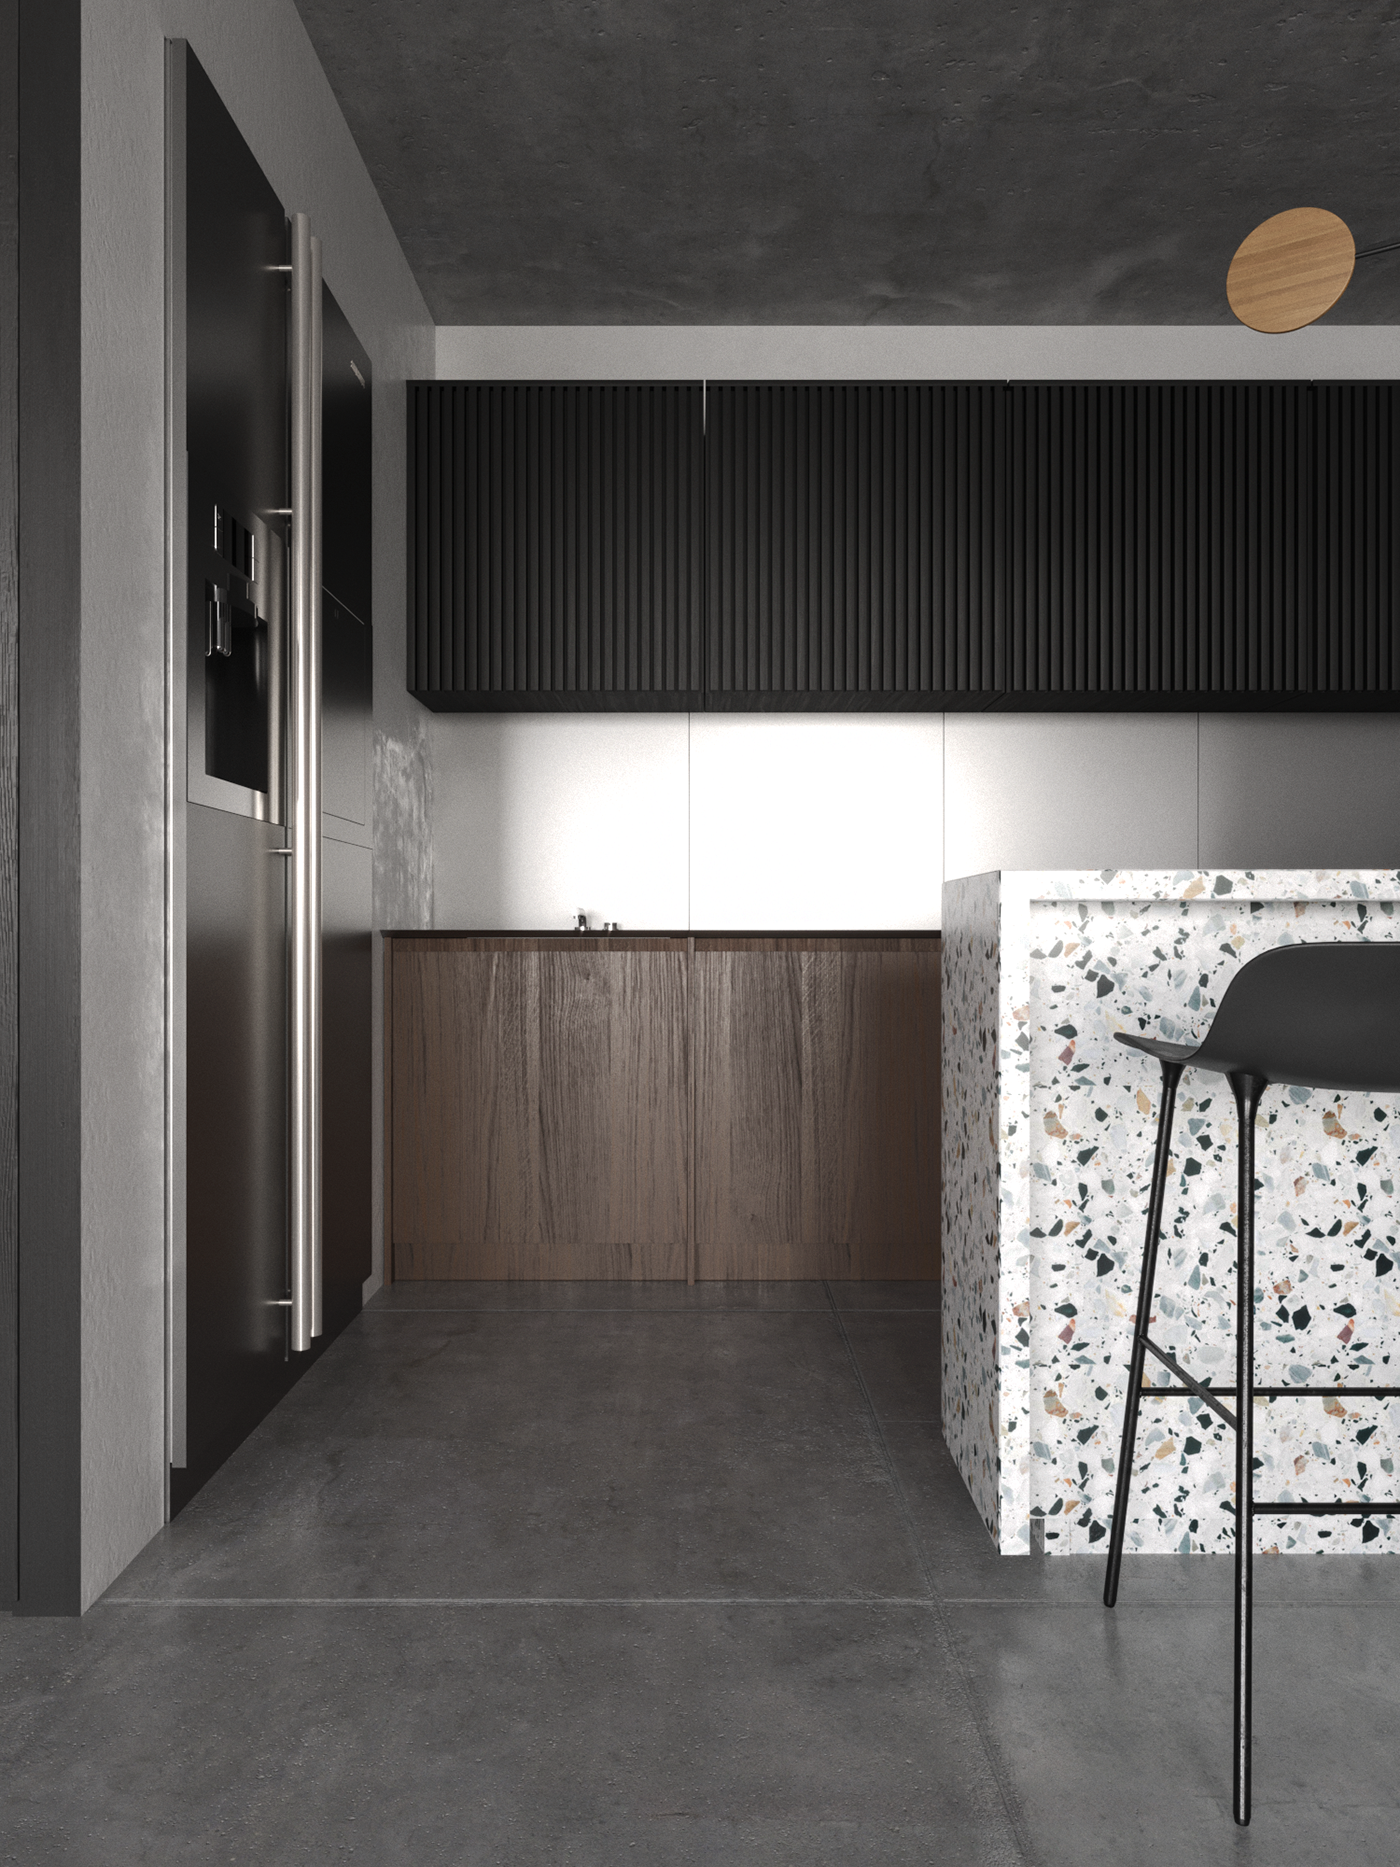 moder corona 3dsmax living room kitchen interior design  nika buzko